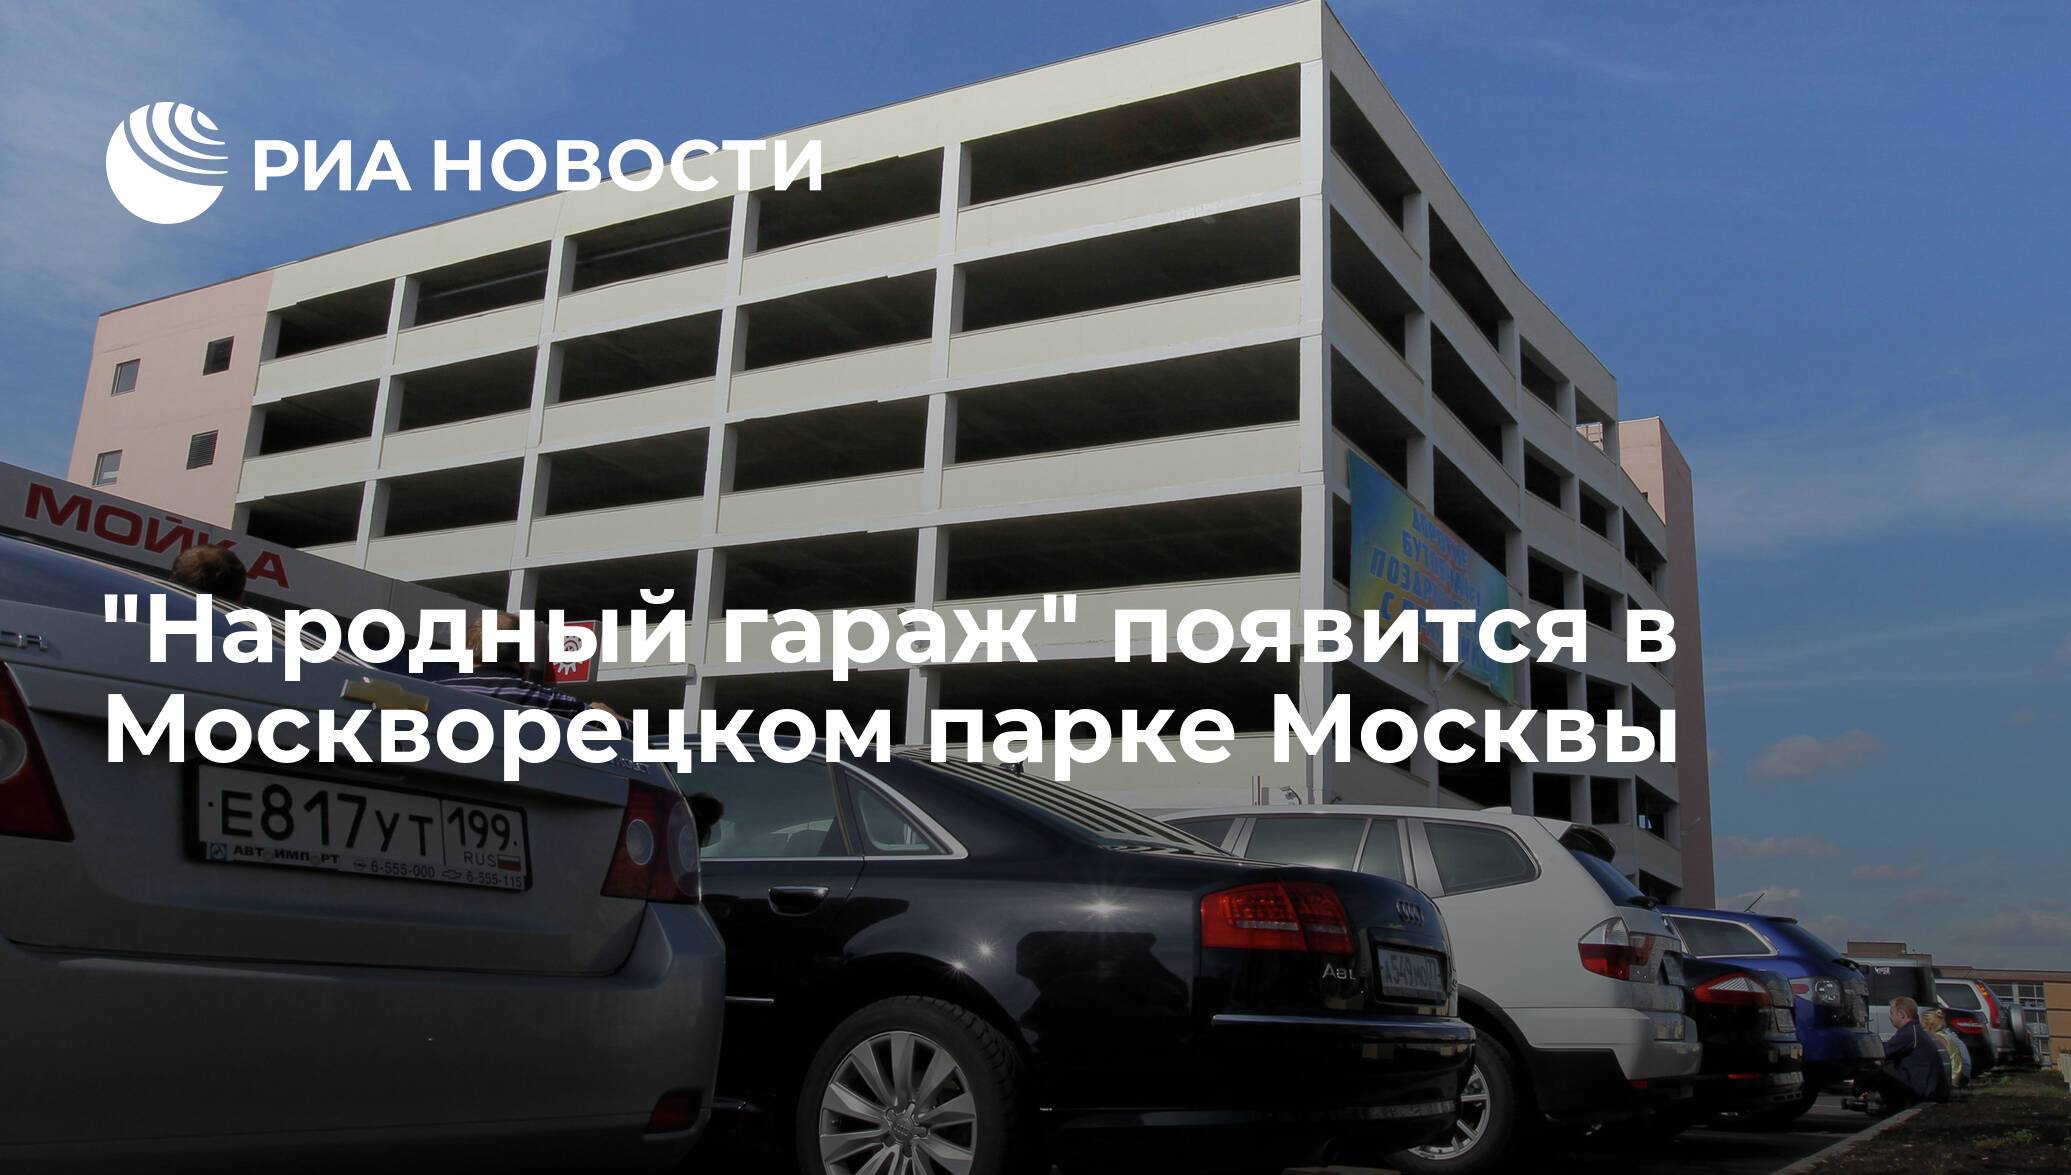 «народный гараж» -2012 - как купить место на парковке? - гаражи и парковки - жкх и городское хозяйство - жизнь в москве - молнет.ru